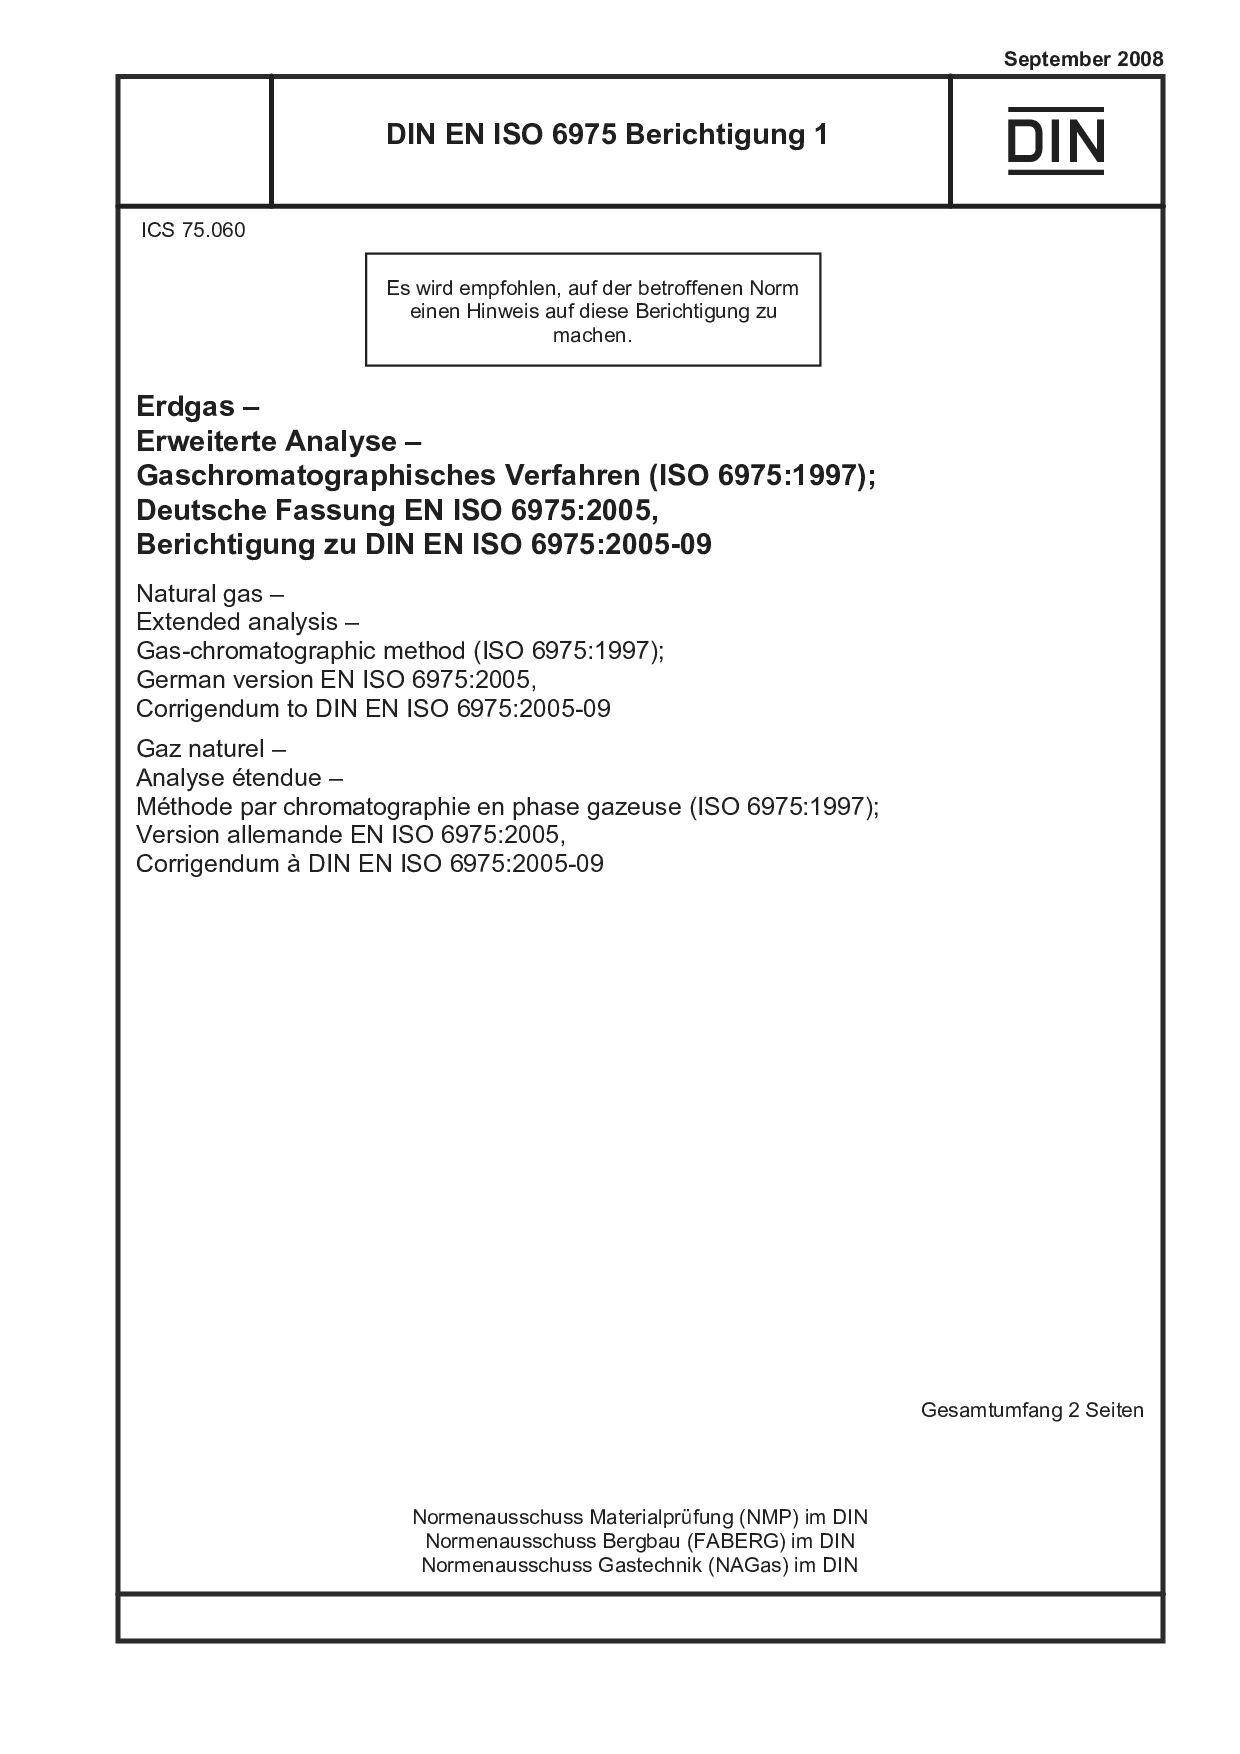 DIN EN ISO 6975 Berichtigung 1:2008